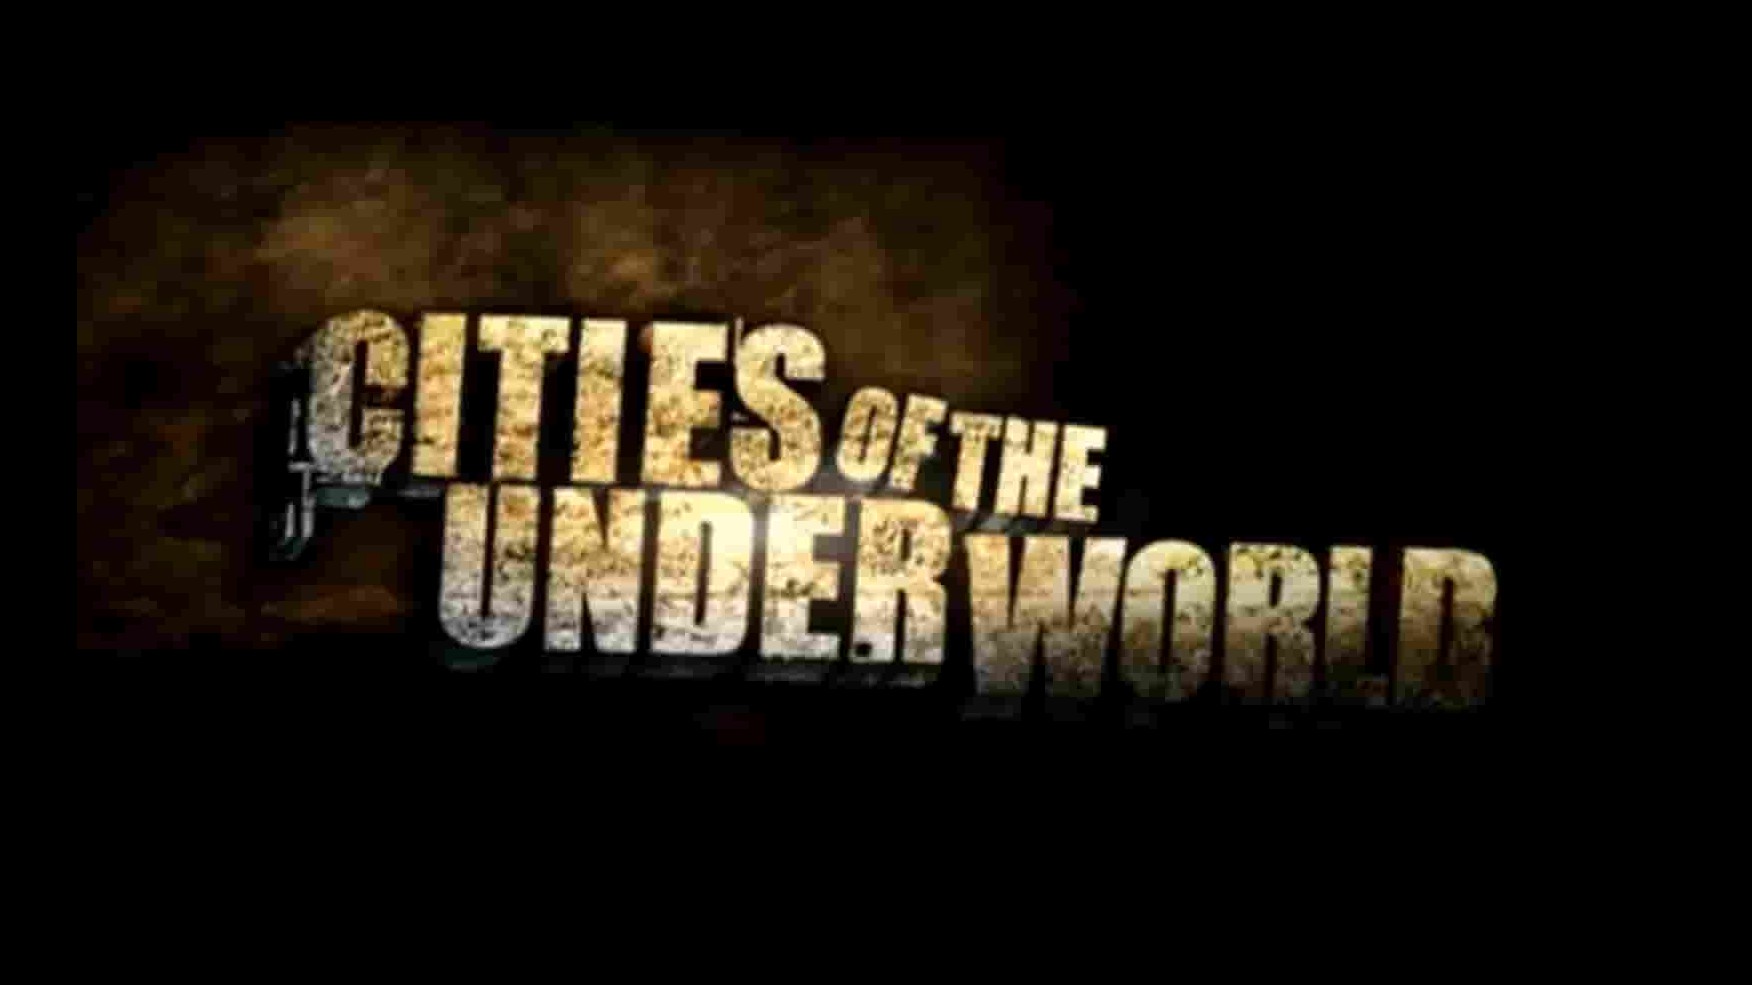  历史频道《神秘地下城/城市之旅 Cities of the Underworld》全1-4季共34集 英语中字 1080P高清网盘下载